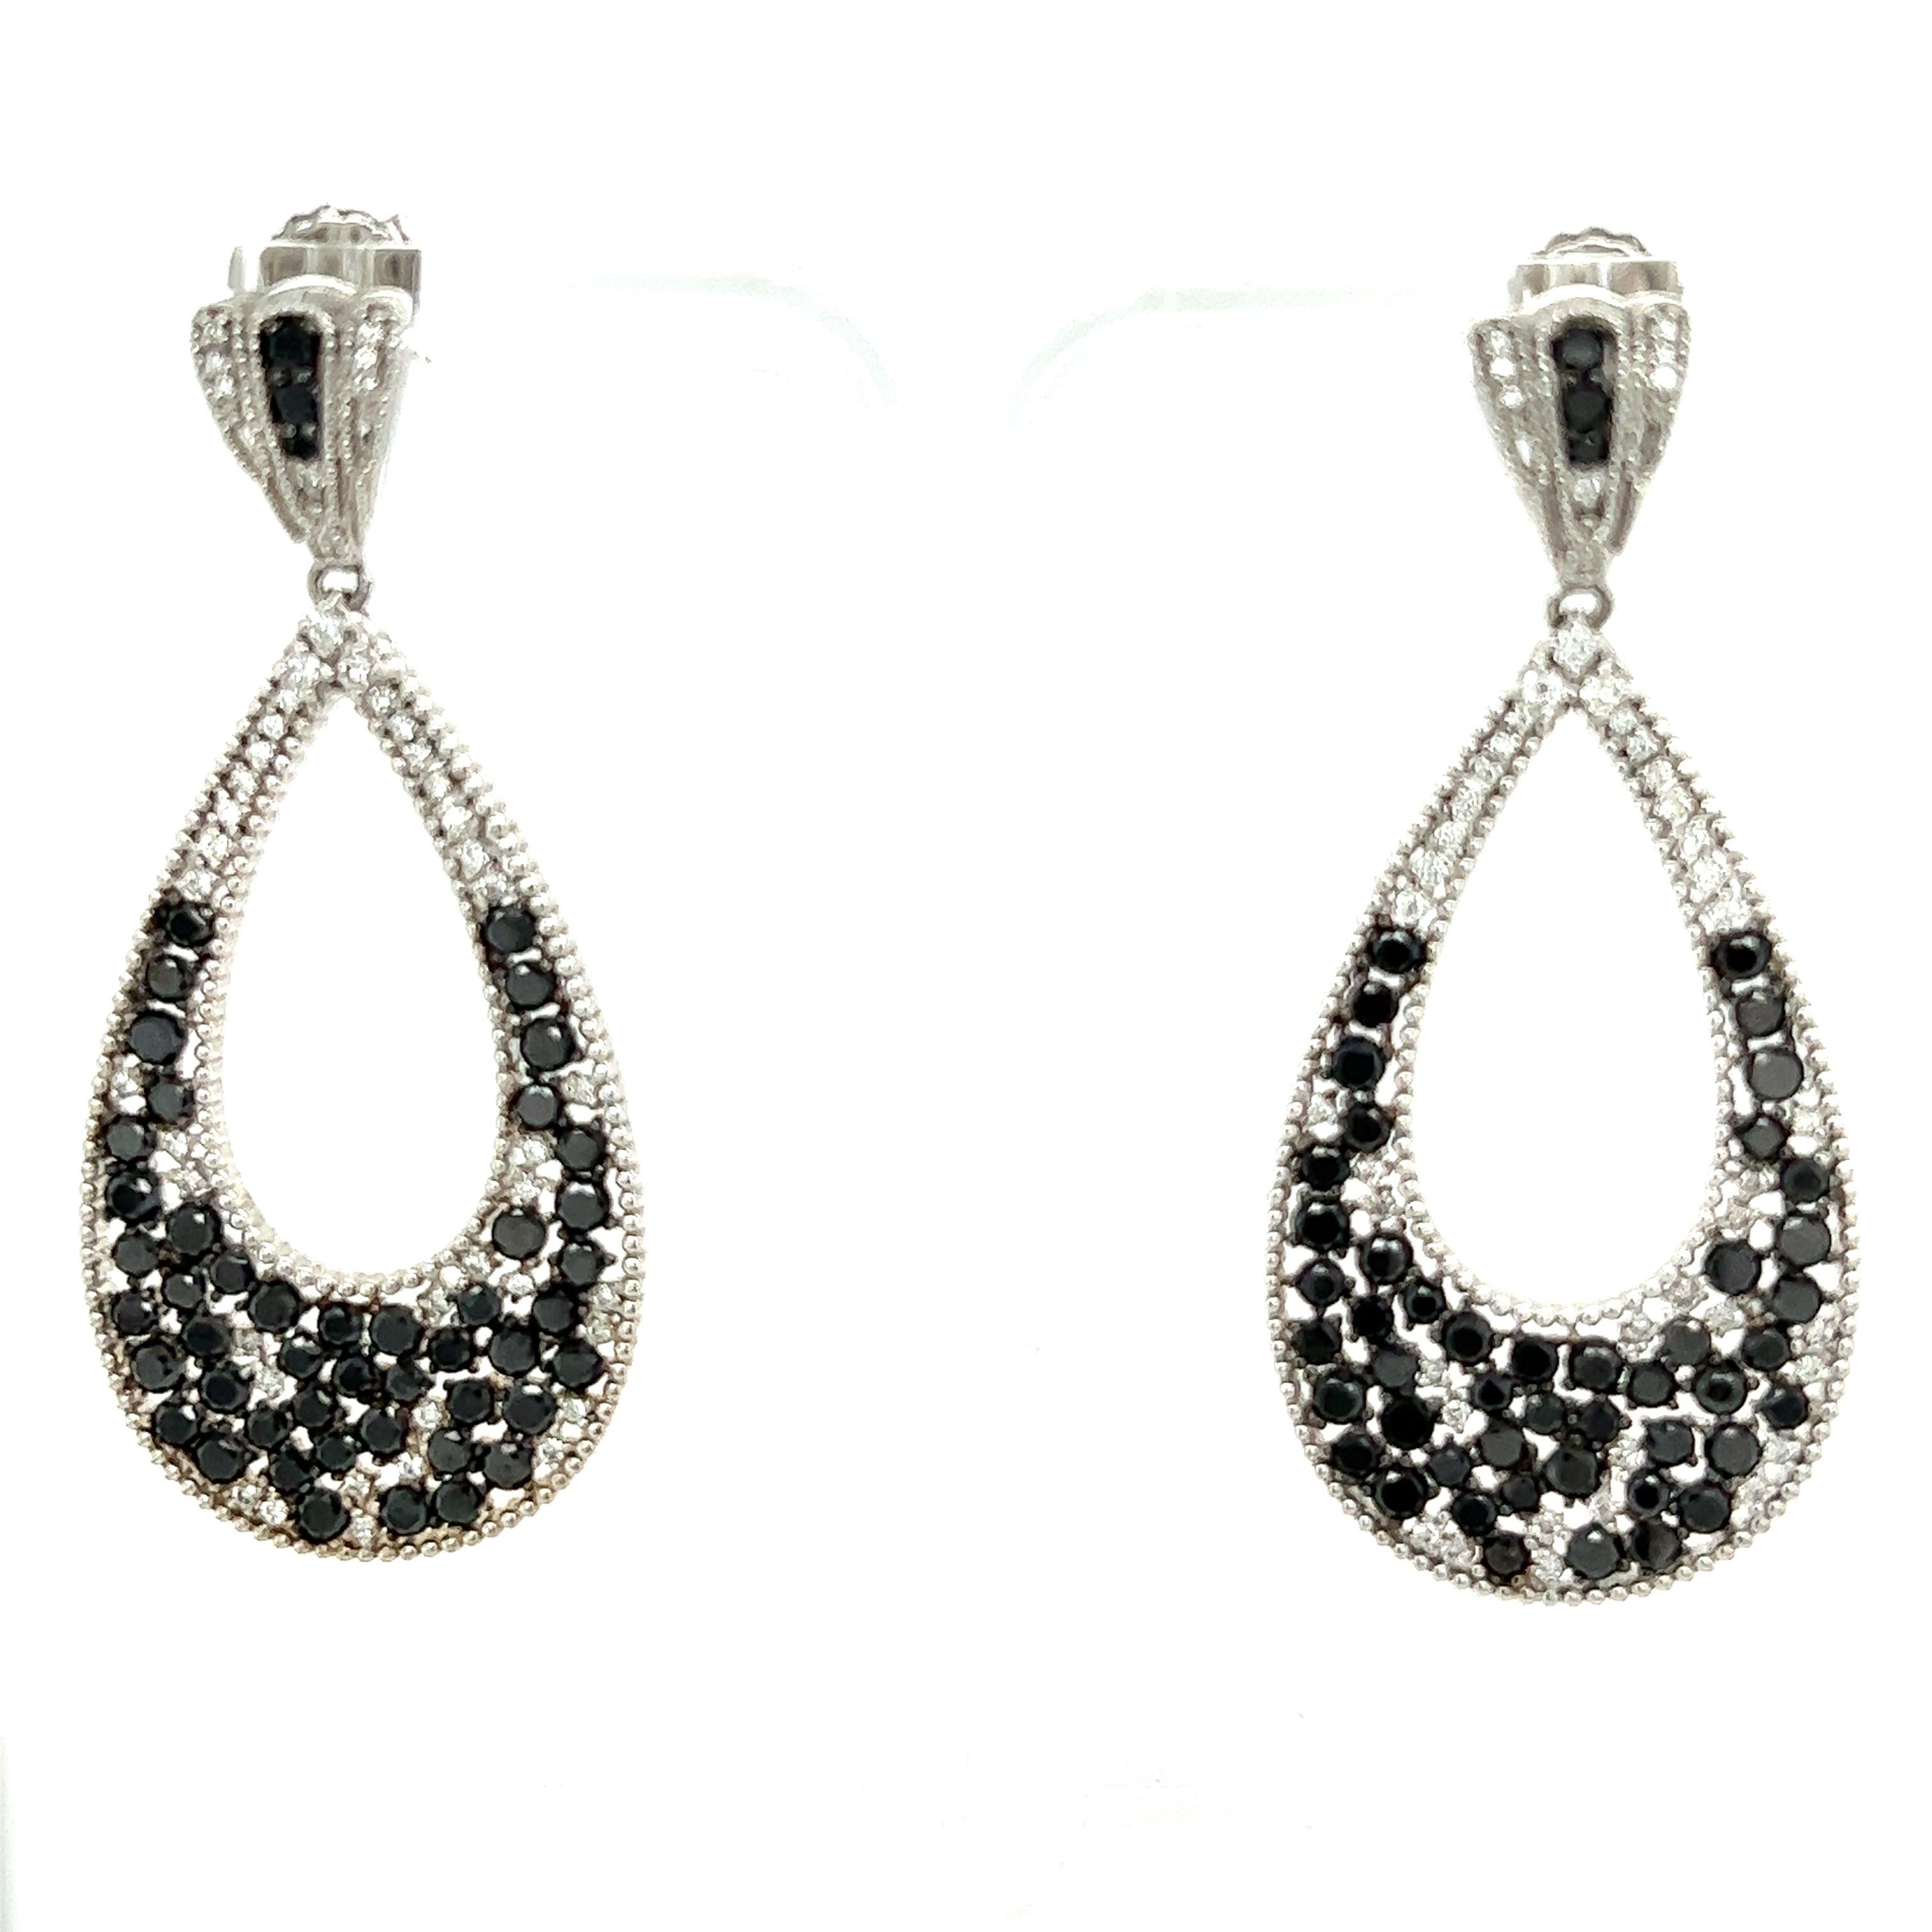 Diese wunderschönen Ohrringe haben natürliche schwarze Diamanten mit einem Gewicht von 5,39 Karat und natürliche weiße Diamanten im Rundschliff mit einem Gewicht von 0,69 Karat. Das Gesamtkaratgewicht der Ohrringe beträgt 6,09 Karat.  Die Reinheit